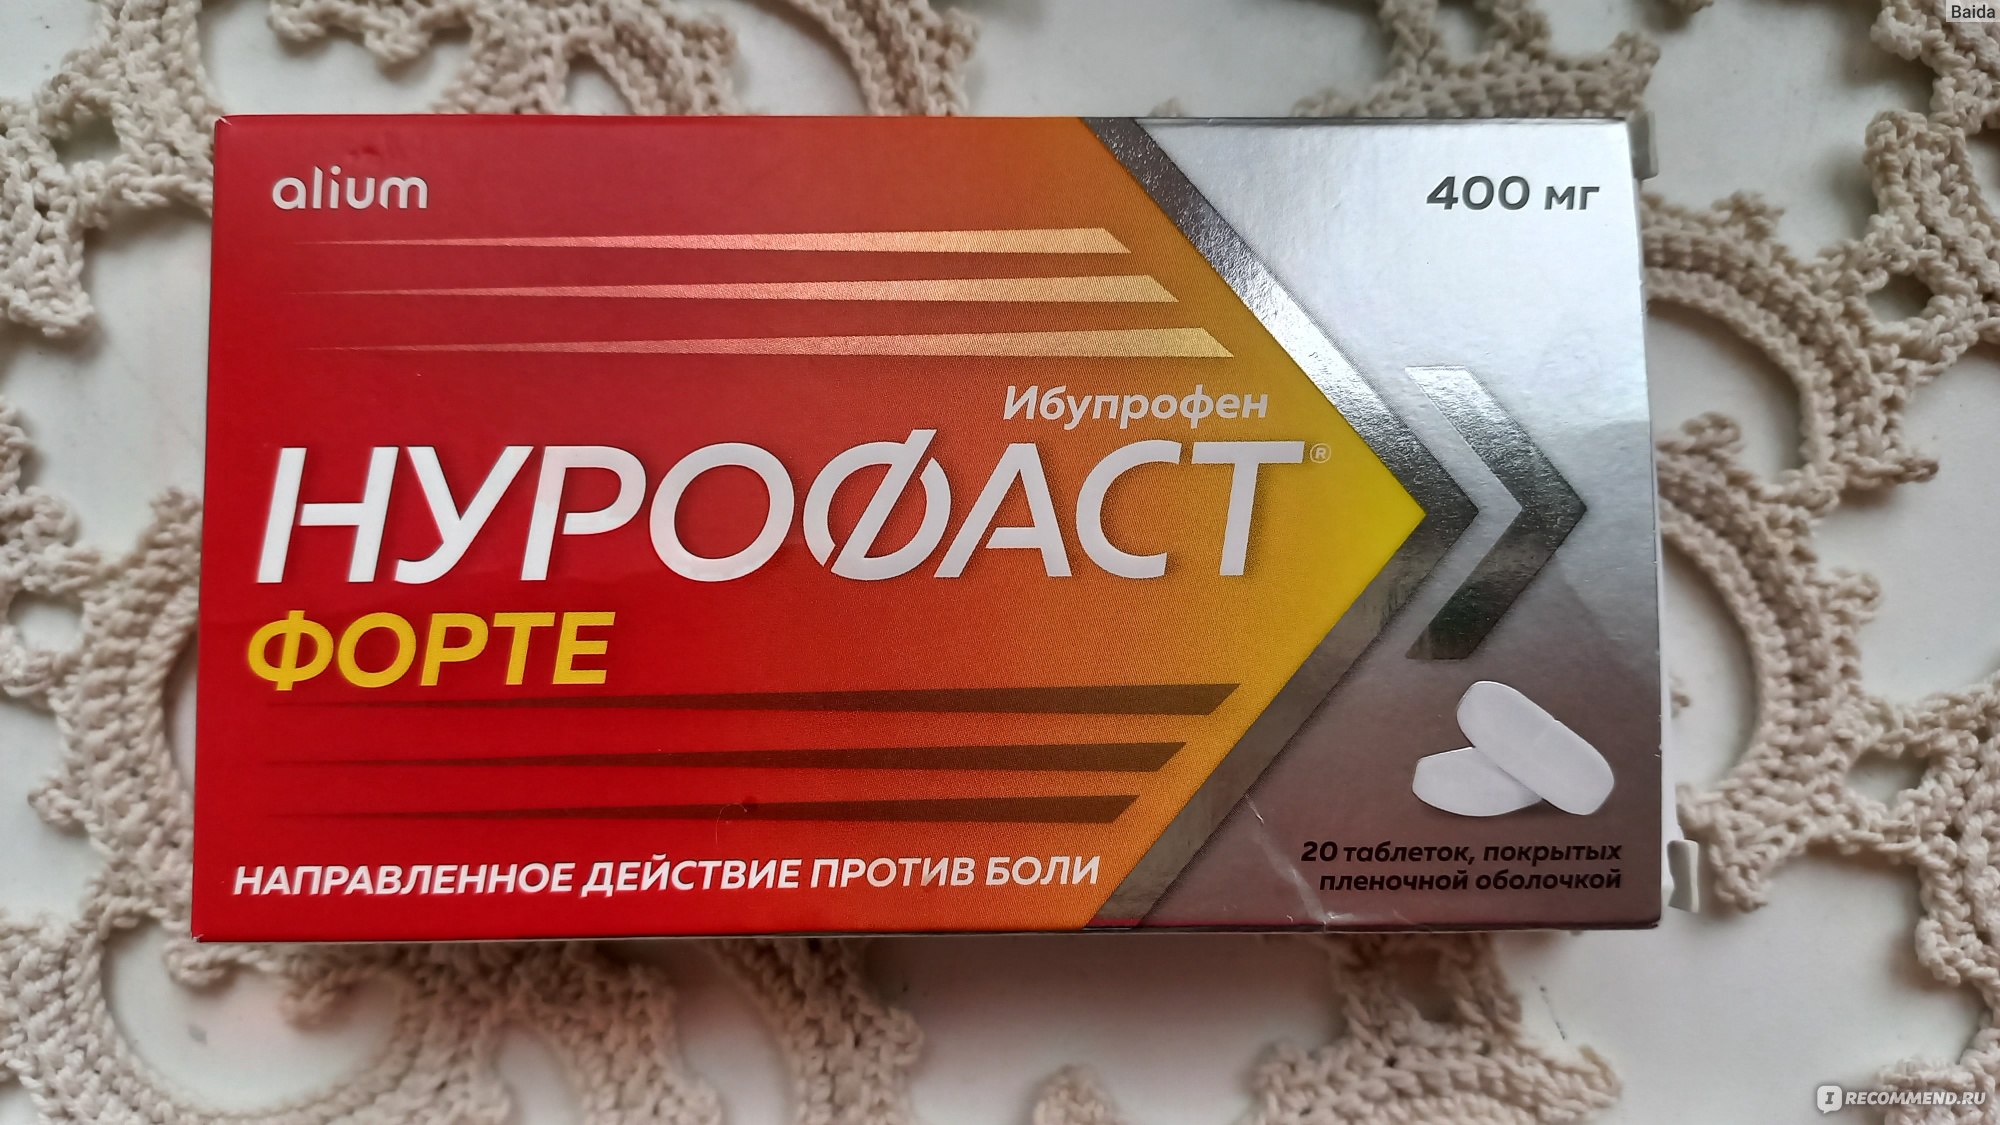 Обезболивающее и противовоспалительное средство АО «ФП «Оболенское .